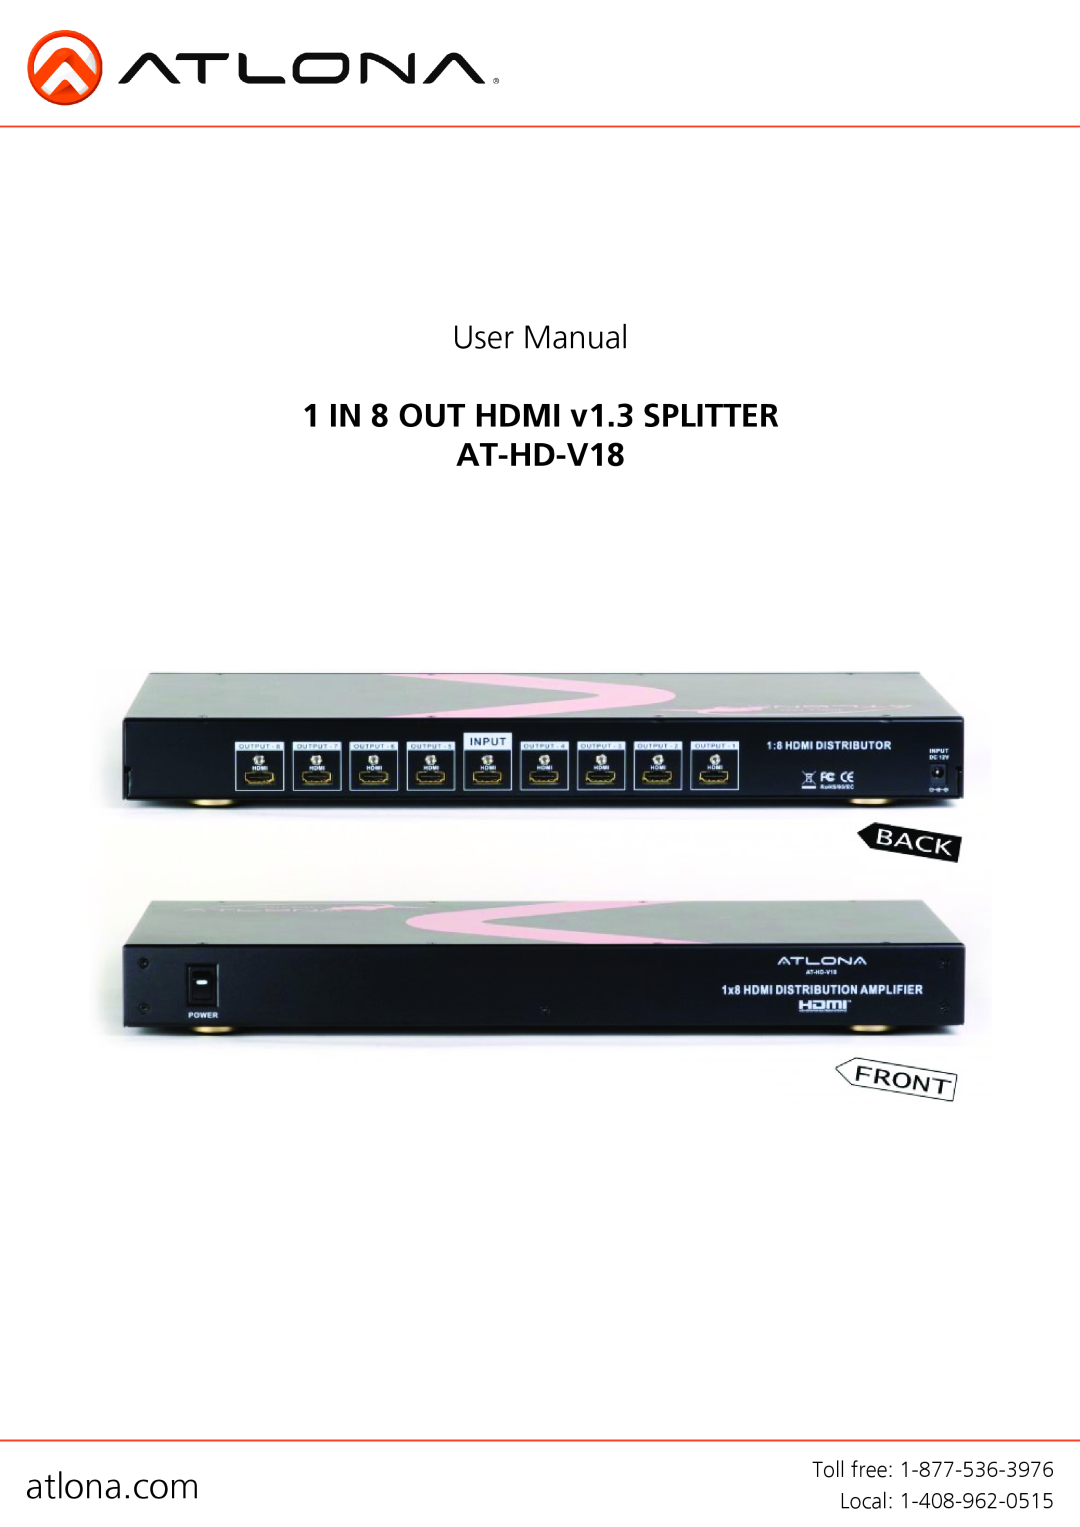 Atlona user manual atlona.com, User Manual, 1 IN 8 OUT HDMI v1.3 SPLITTER AT-HD-V18 